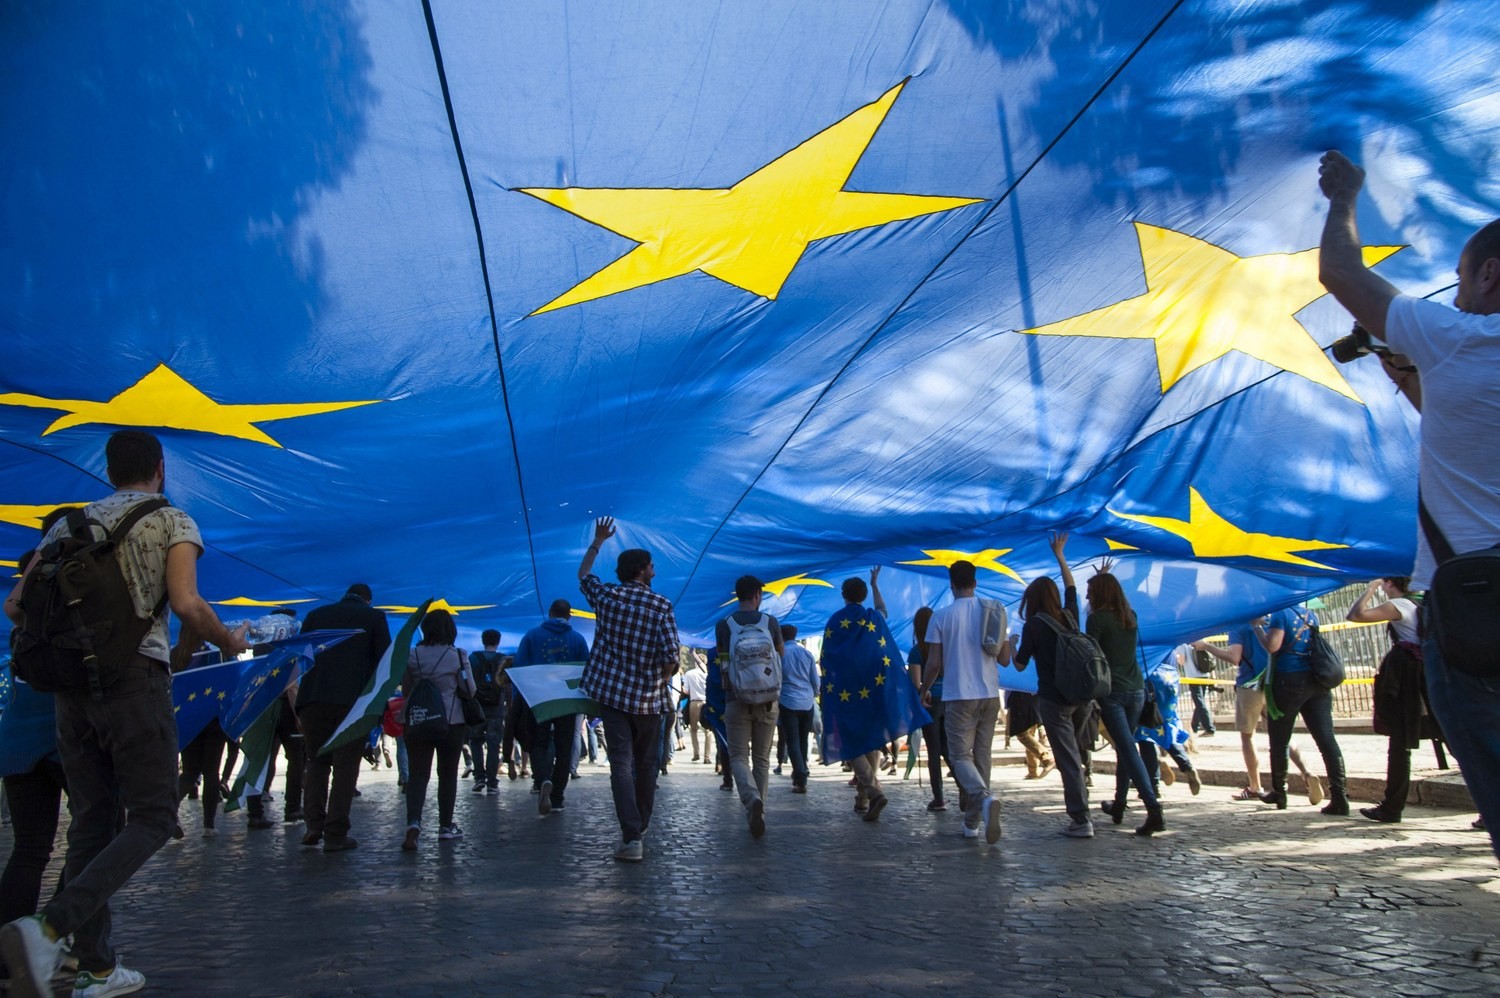 Ο Κωνσταντίνος Μαργαρίτης σημειώνει ότι οι ευρωεκλογές θα σηματοδοτήσουν νέες εξελίξεις. Οι εκλογές για την ανάδειξη των βουλευτών του Ευρωπαϊκού κοινοβουλίου, είναι μια πράξη καθοριστική για το «μέλλον της Ευρώπης». new deal